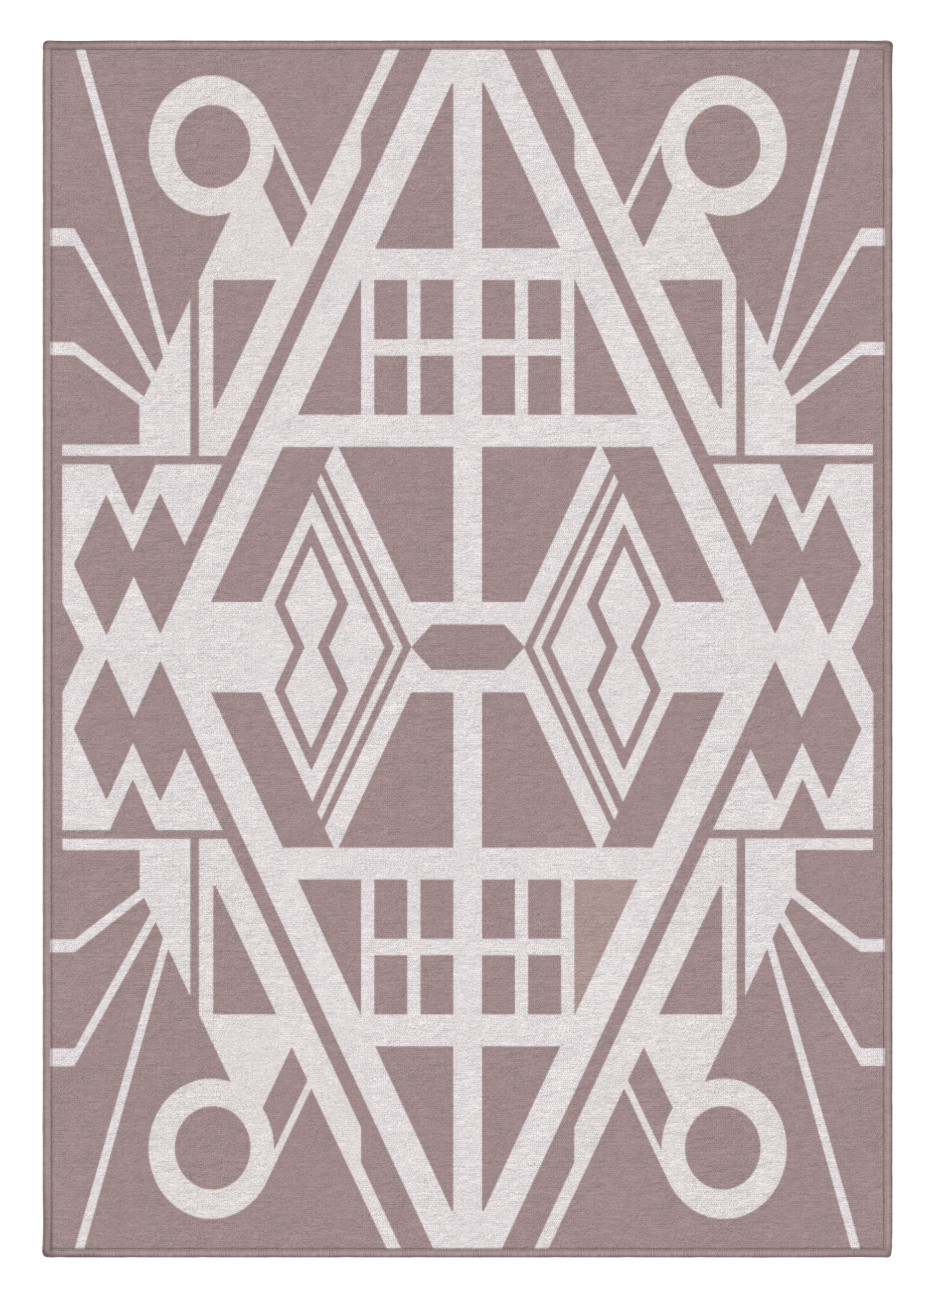 Dizajnový kusový koberec Mexico od Jindřicha Lípy - 160x230 cm GDmats koberce 